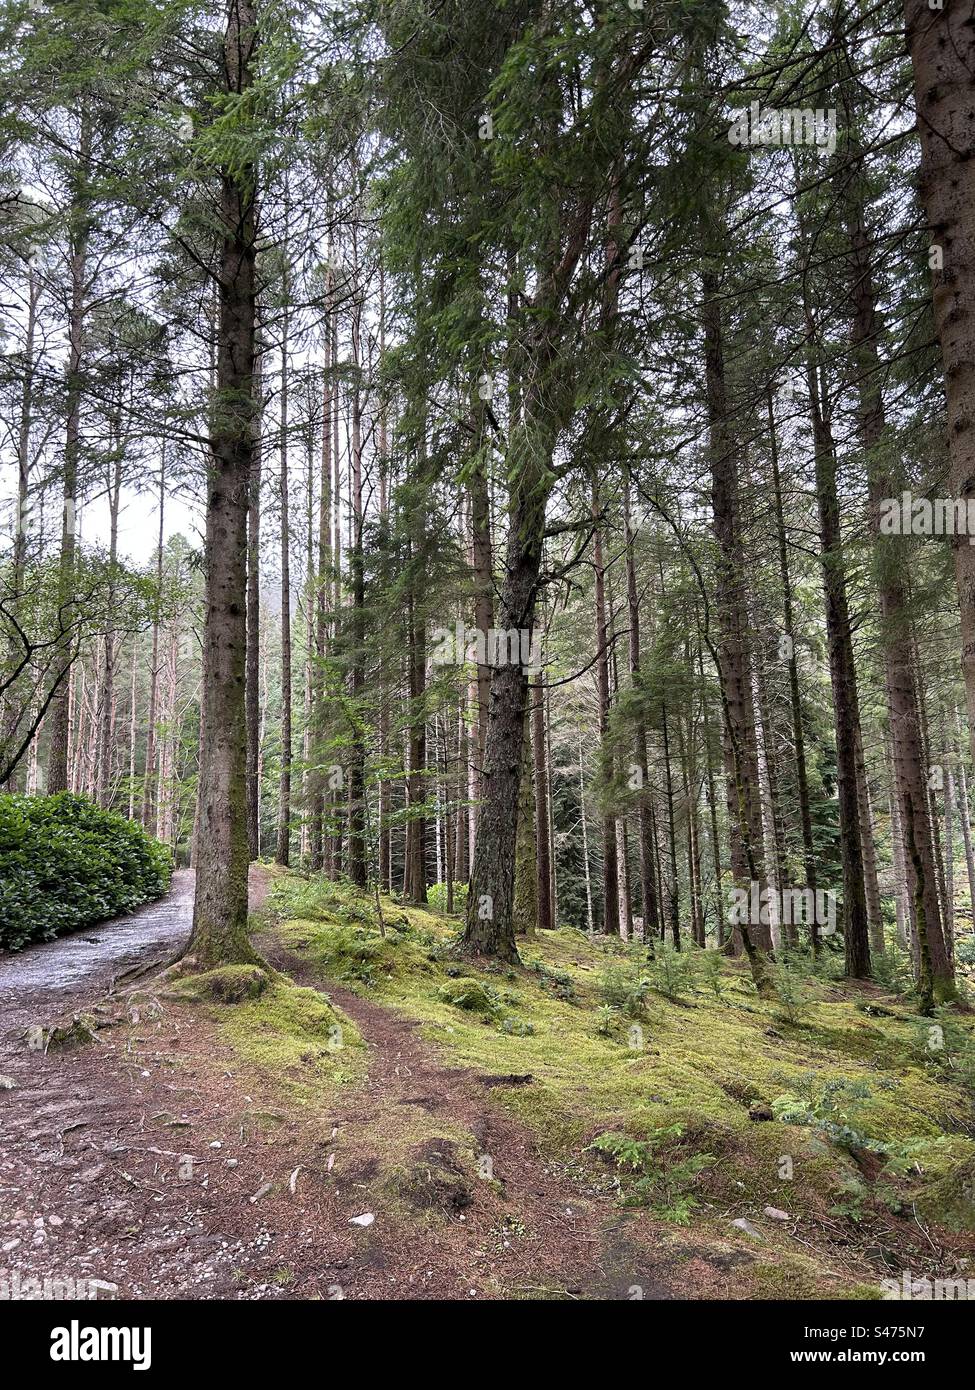 Glencoe Lochan Trails, près de Ballachulish, Écosse. Promenades dans la nature en Écosse. Banque D'Images